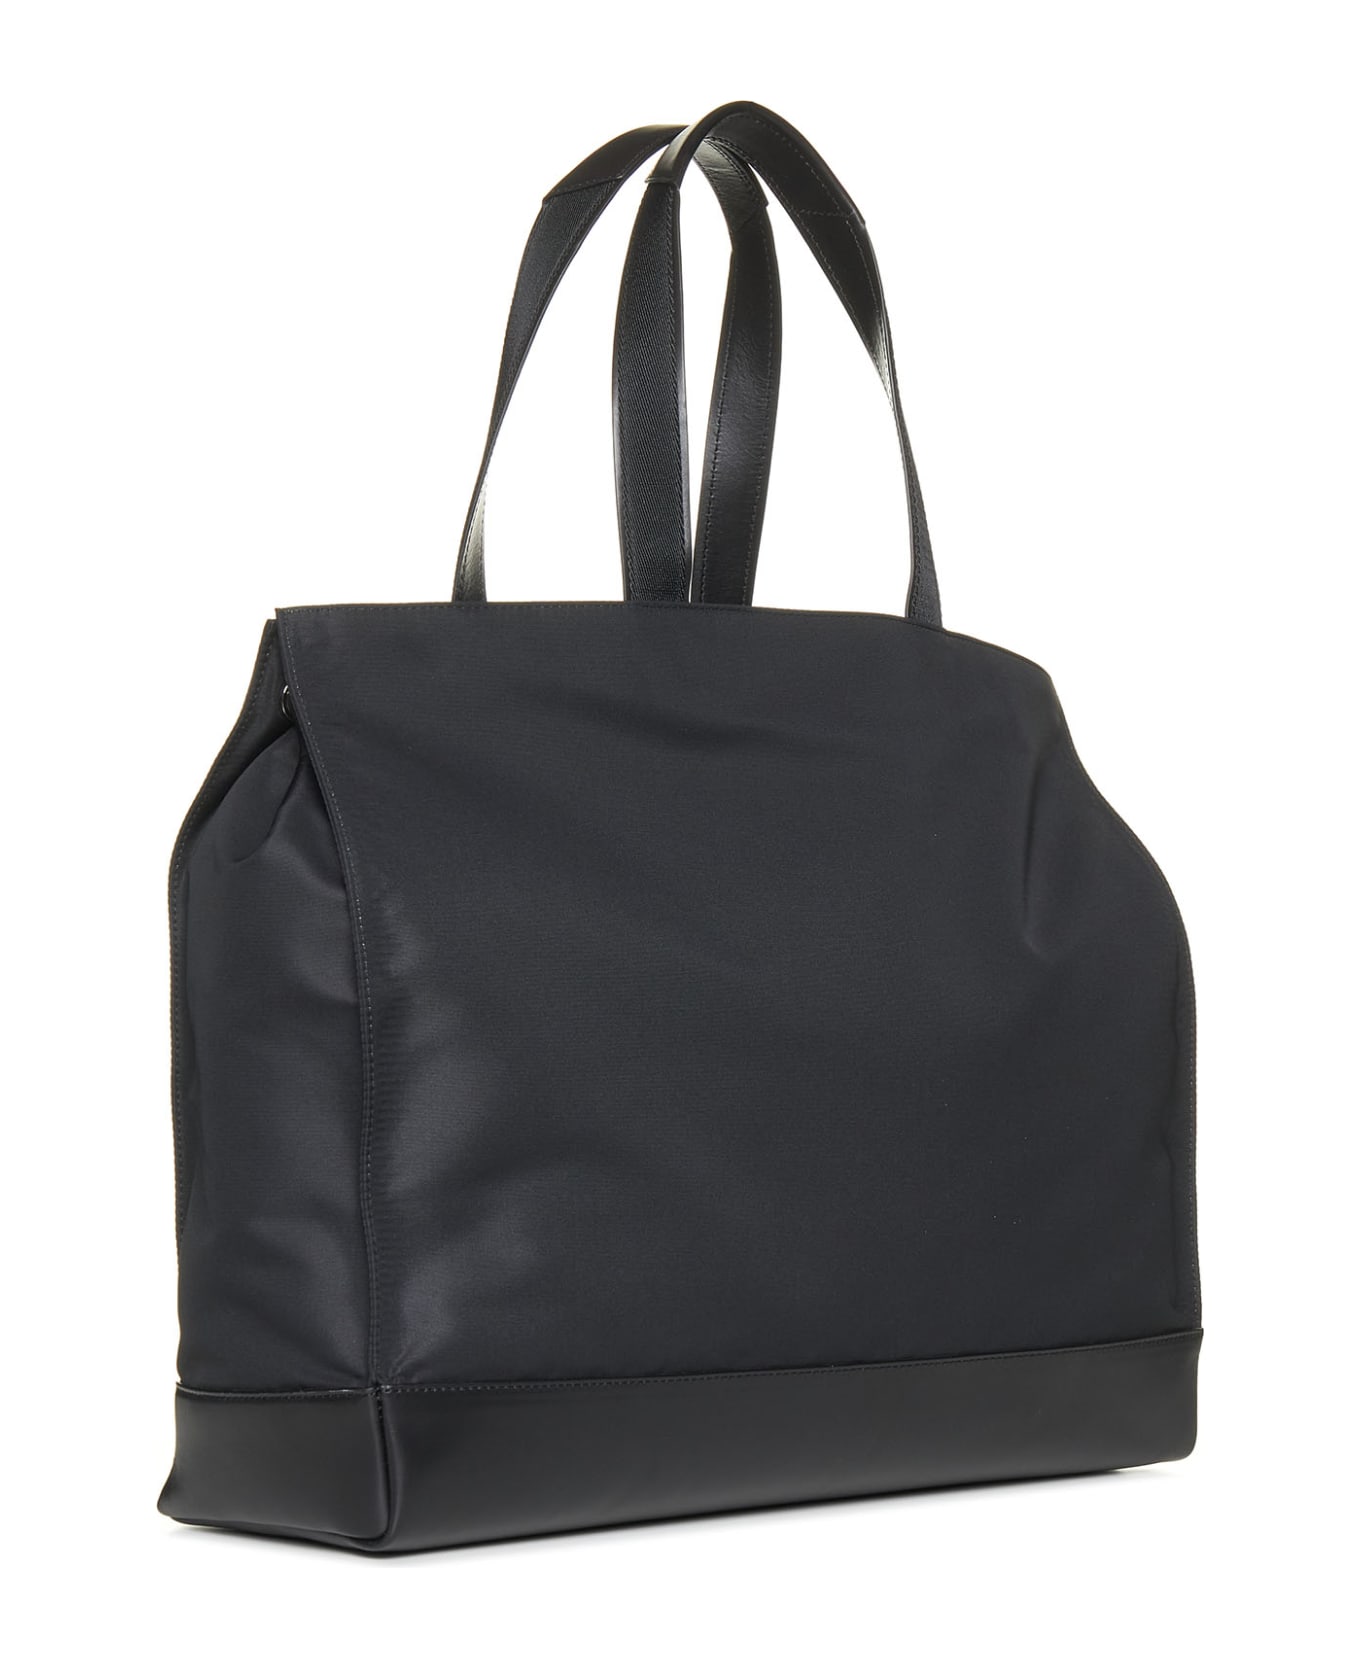 Alexander McQueen Black Nylon And Leather De Manta Tote Bag - Nero